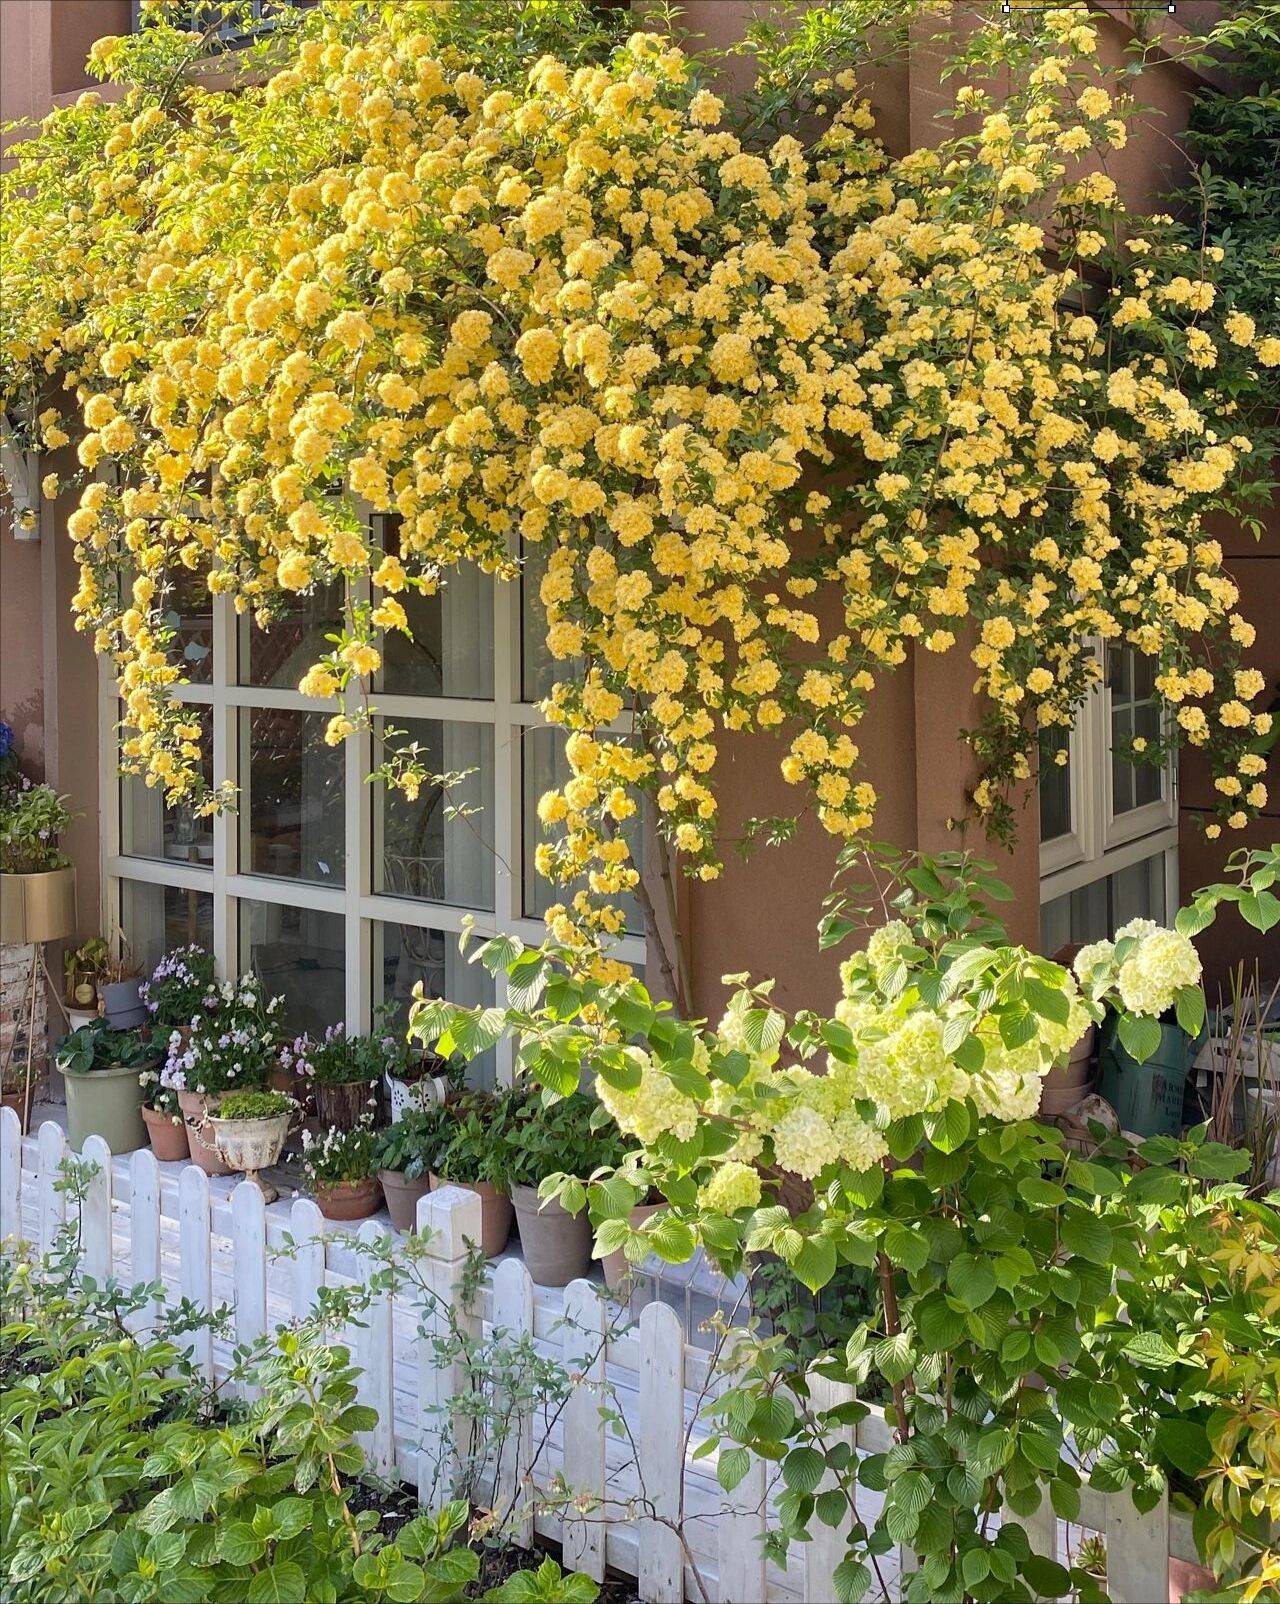 Ngẩn ngơ trước khu vườn nhà 60m² đẹp như tranh vẽ, thác hoa phủ vàng ruộm cả một góc - Ảnh 10.